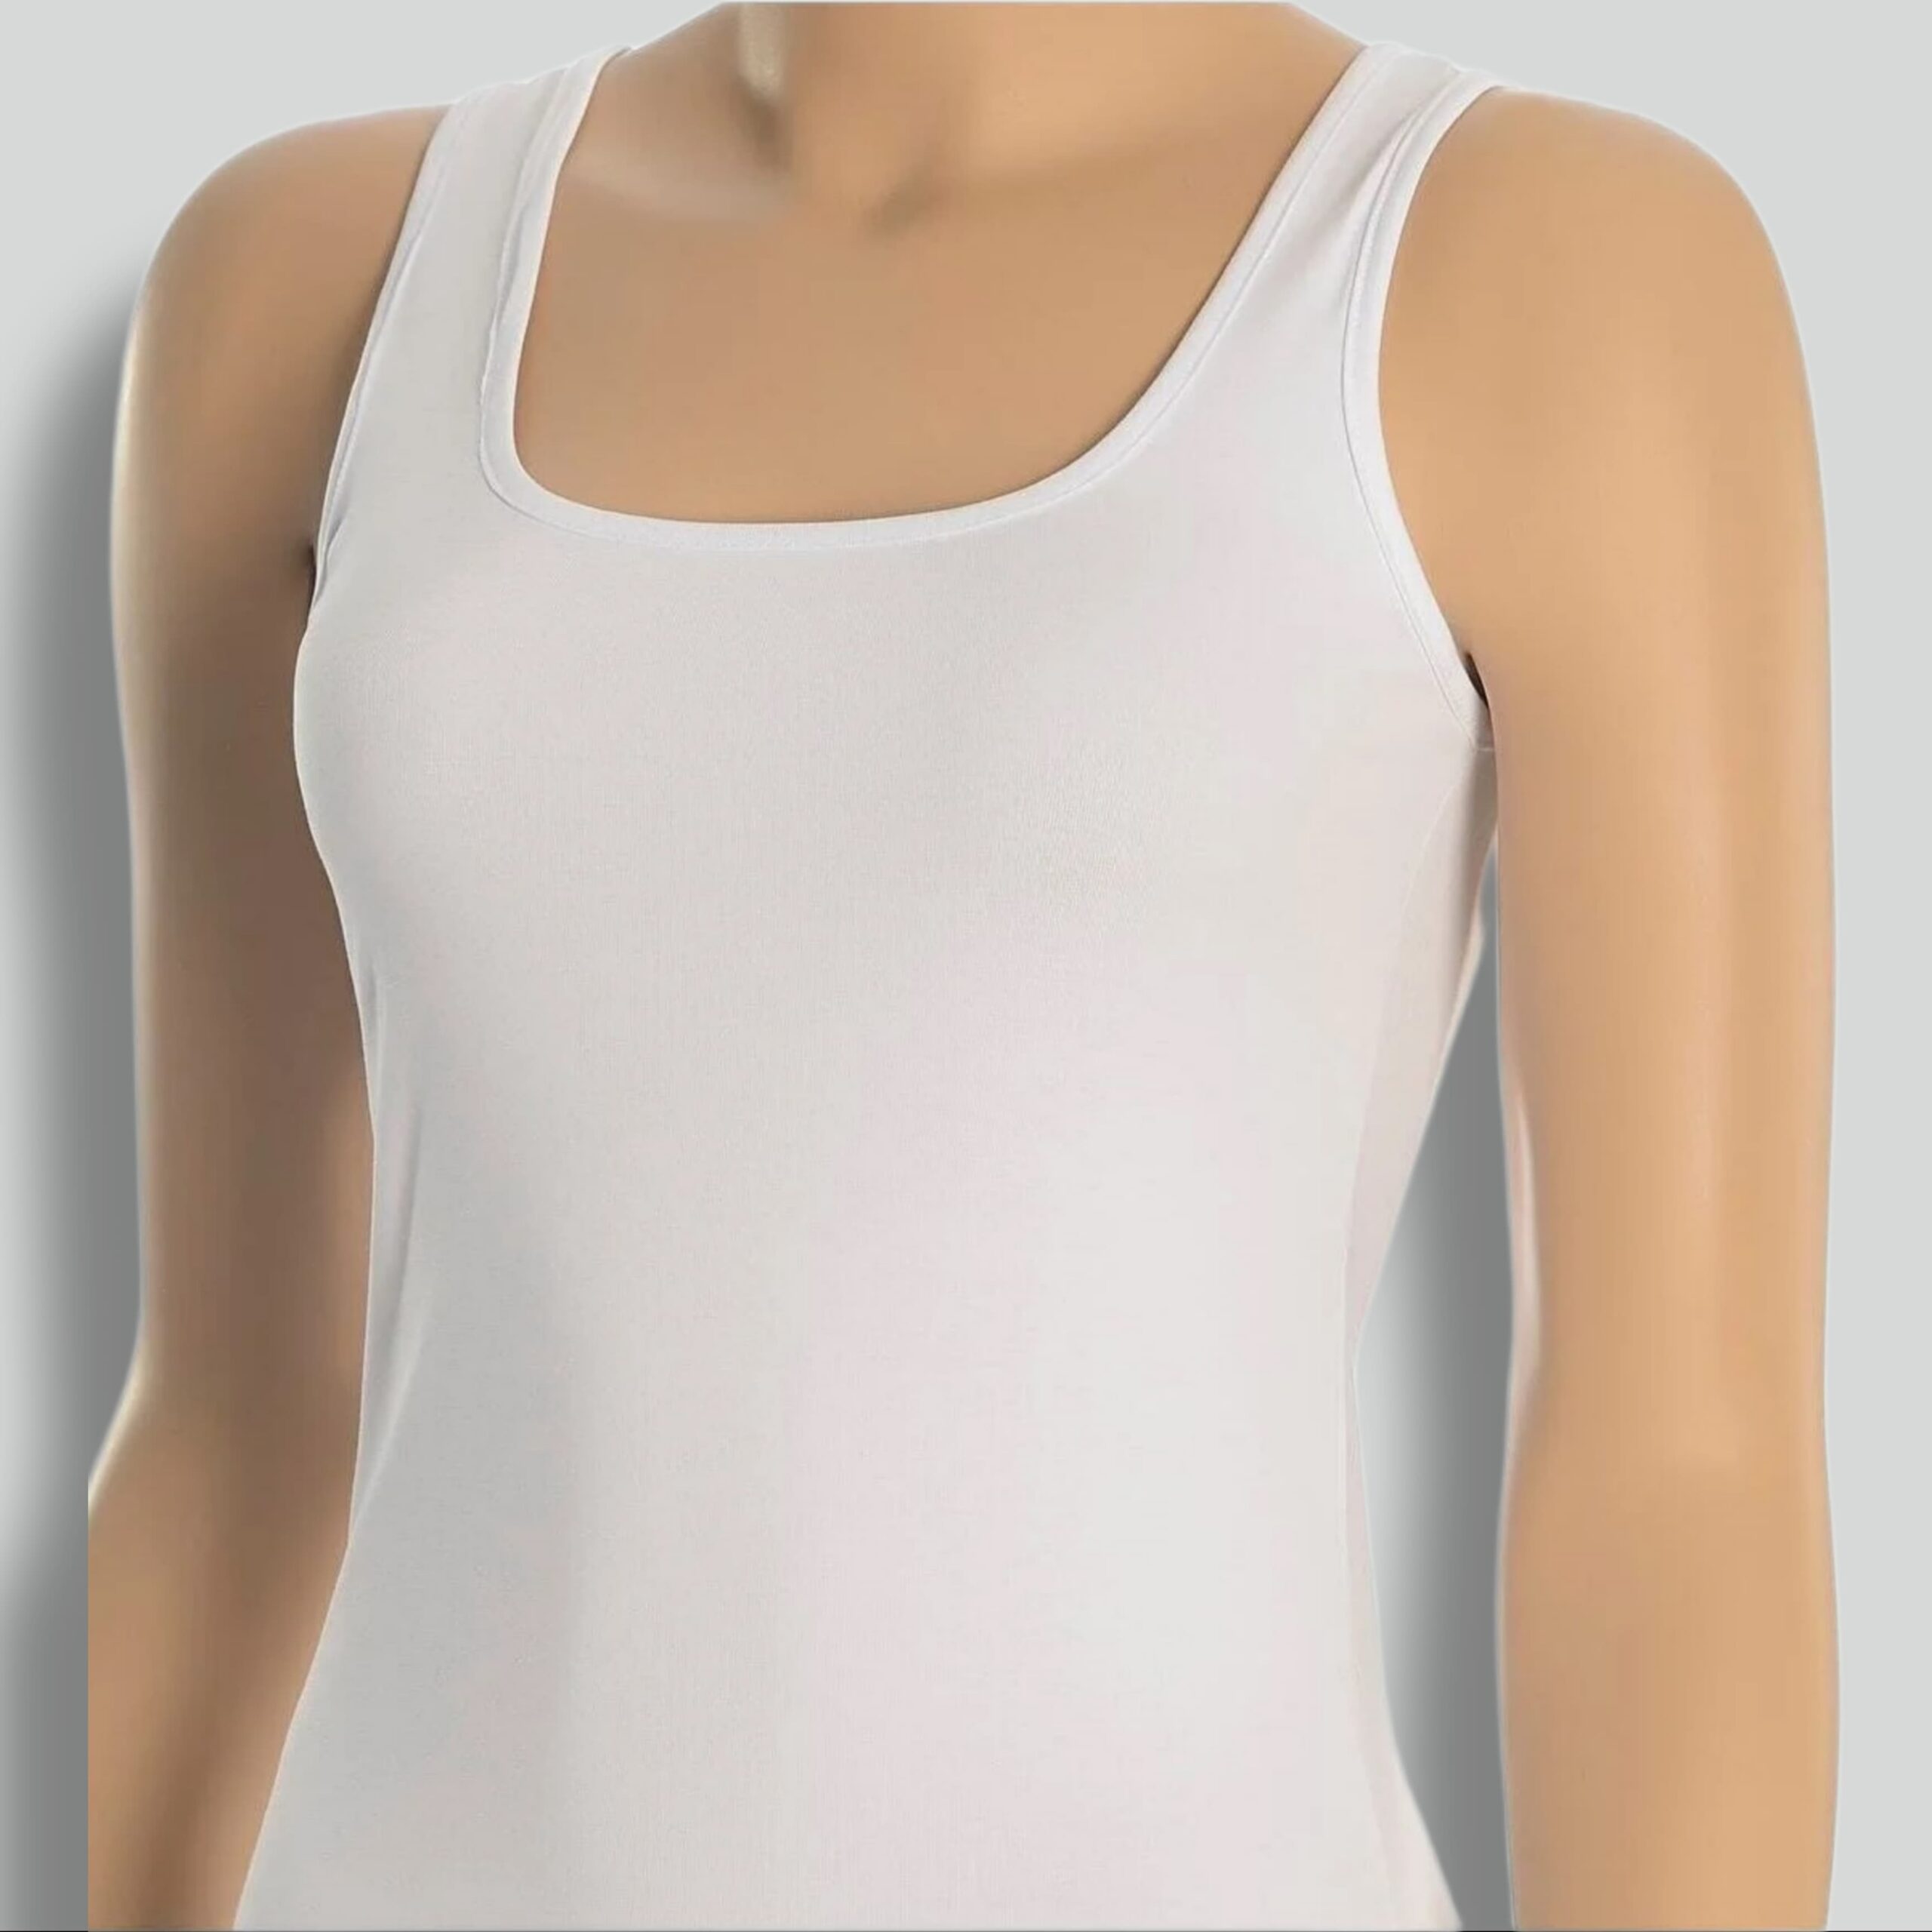 Premium 100% katoenen wit hemd voor dames, huidvriendelijk Women's Premium Cotton Shirt - Tank Top - 100% Cotton - M